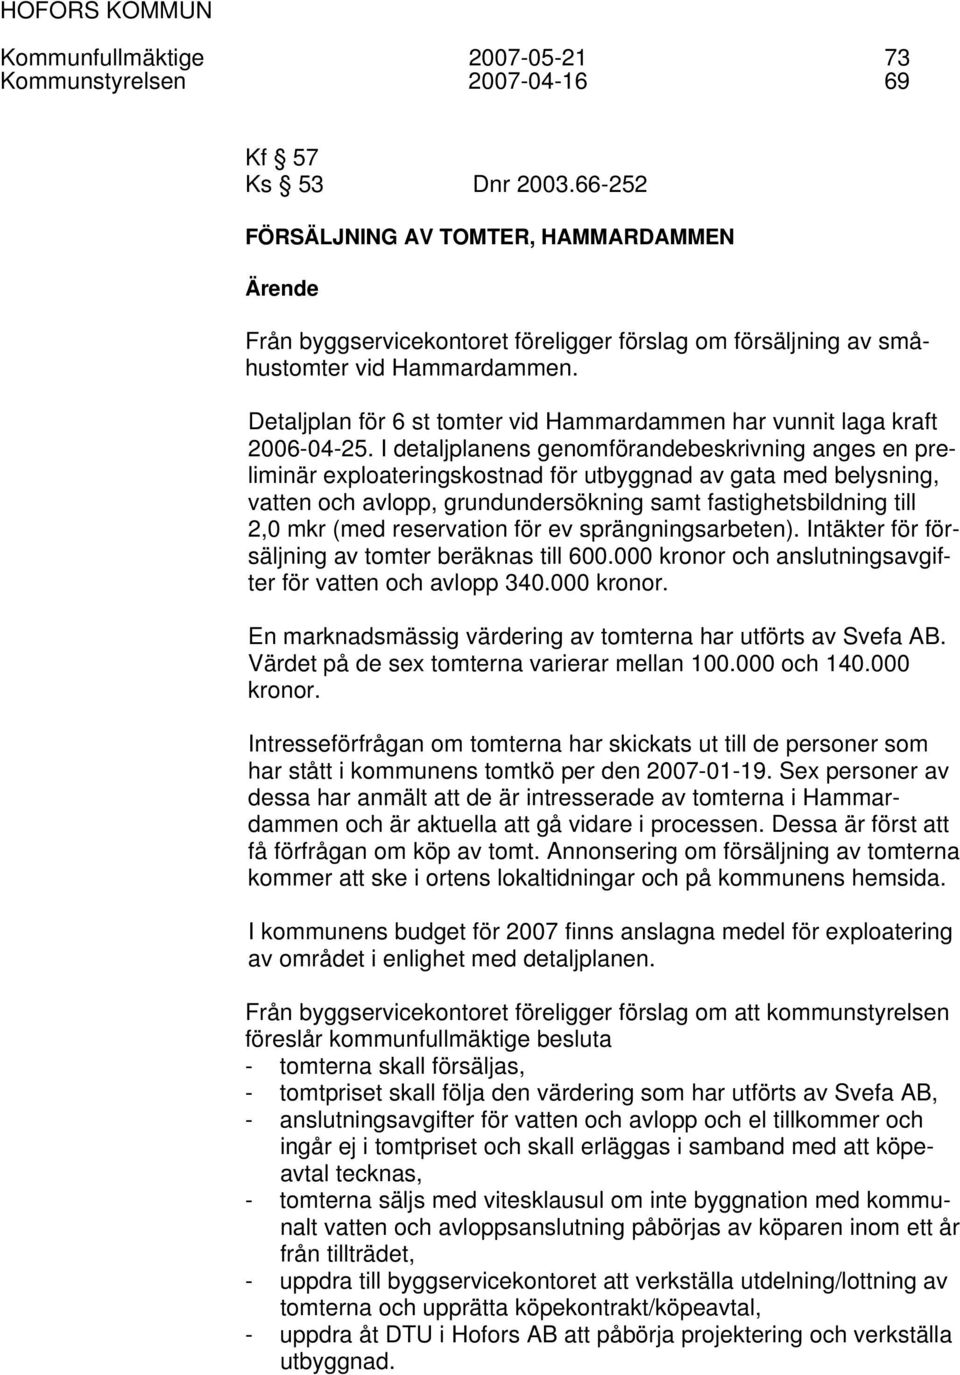 Detaljplan för 6 st tomter vid Hammardammen har vunnit laga kraft 2006-04-25.